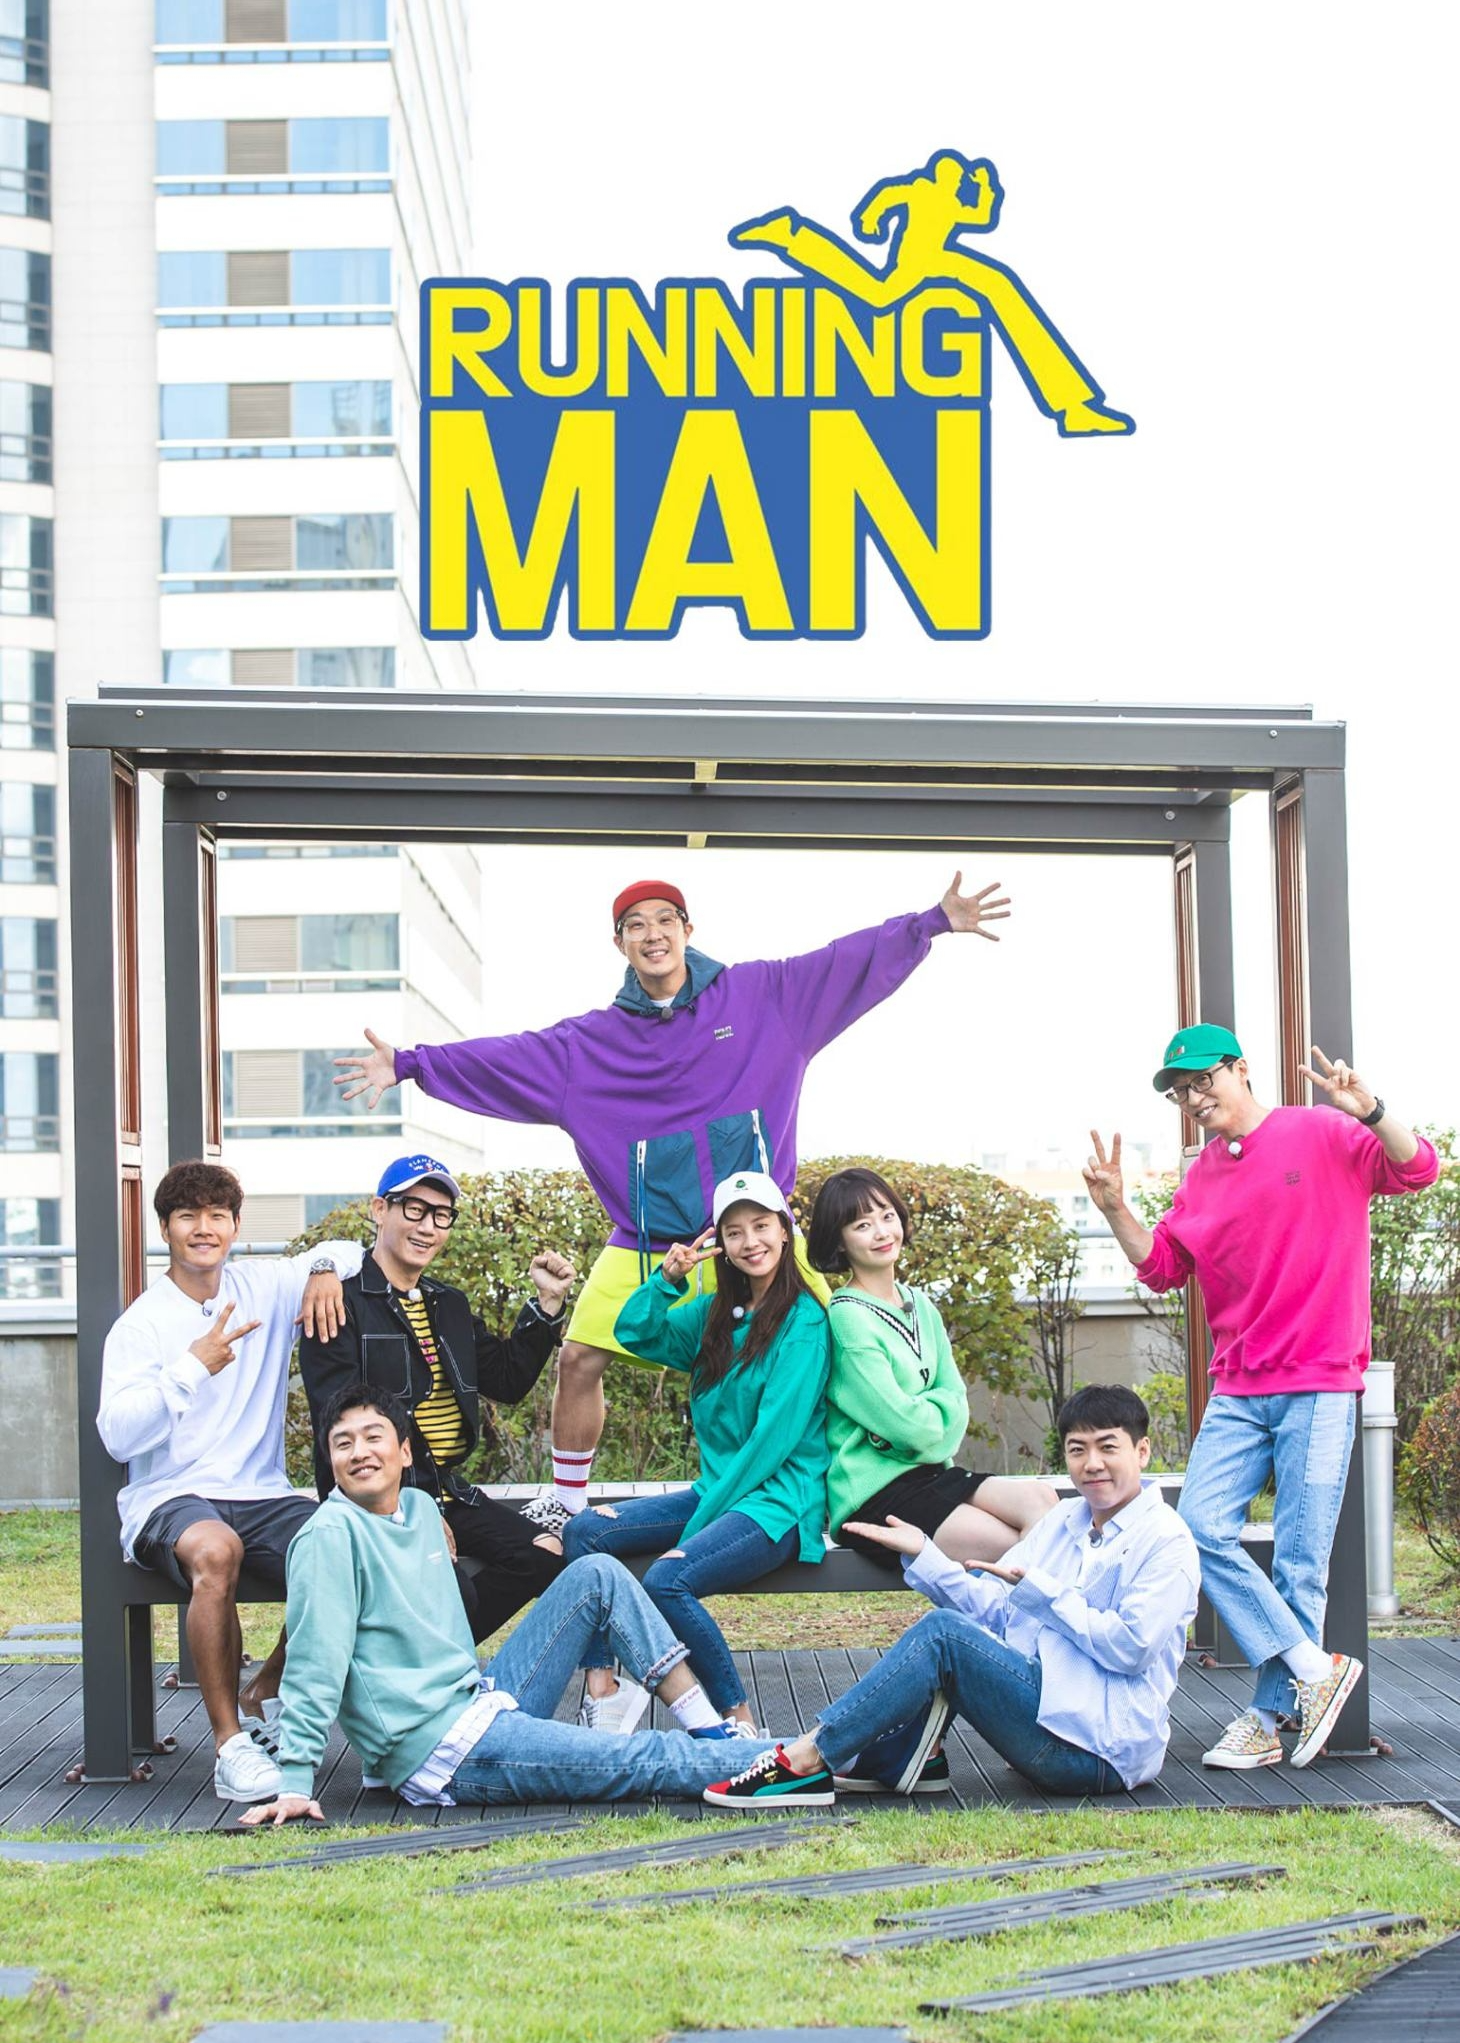 Running Man - Watch HD Video Online